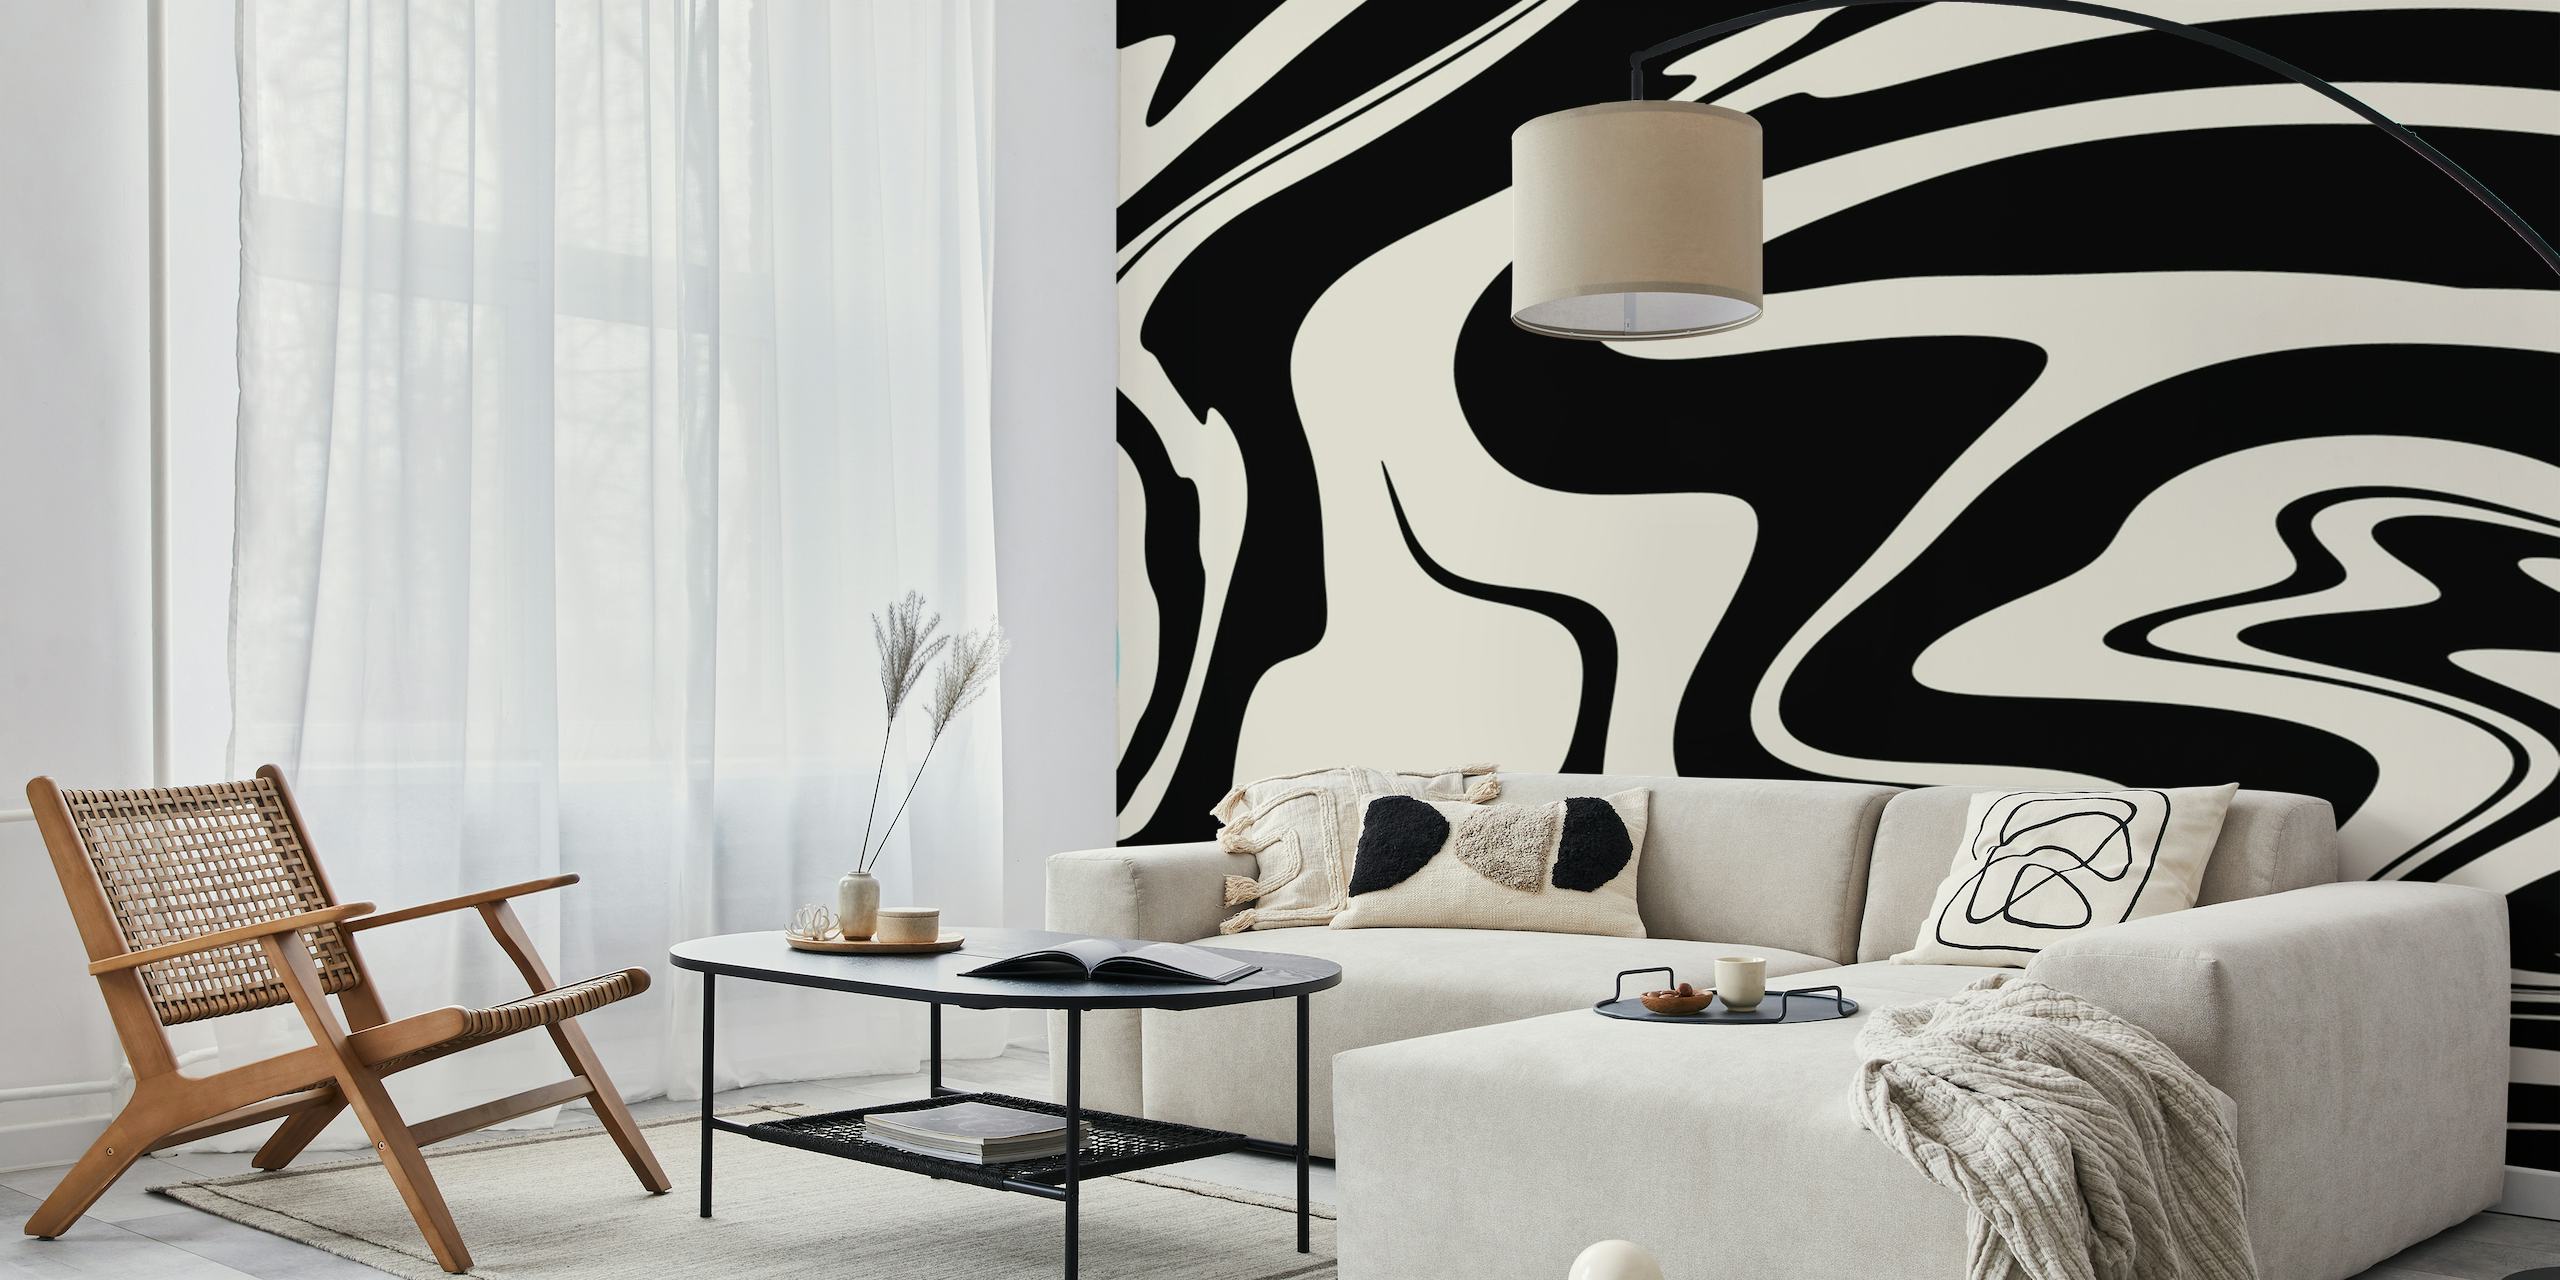 Diseño arremolinado abstracto en blanco y negro que recuerda al estilo retro glamoroso para mural de pared.